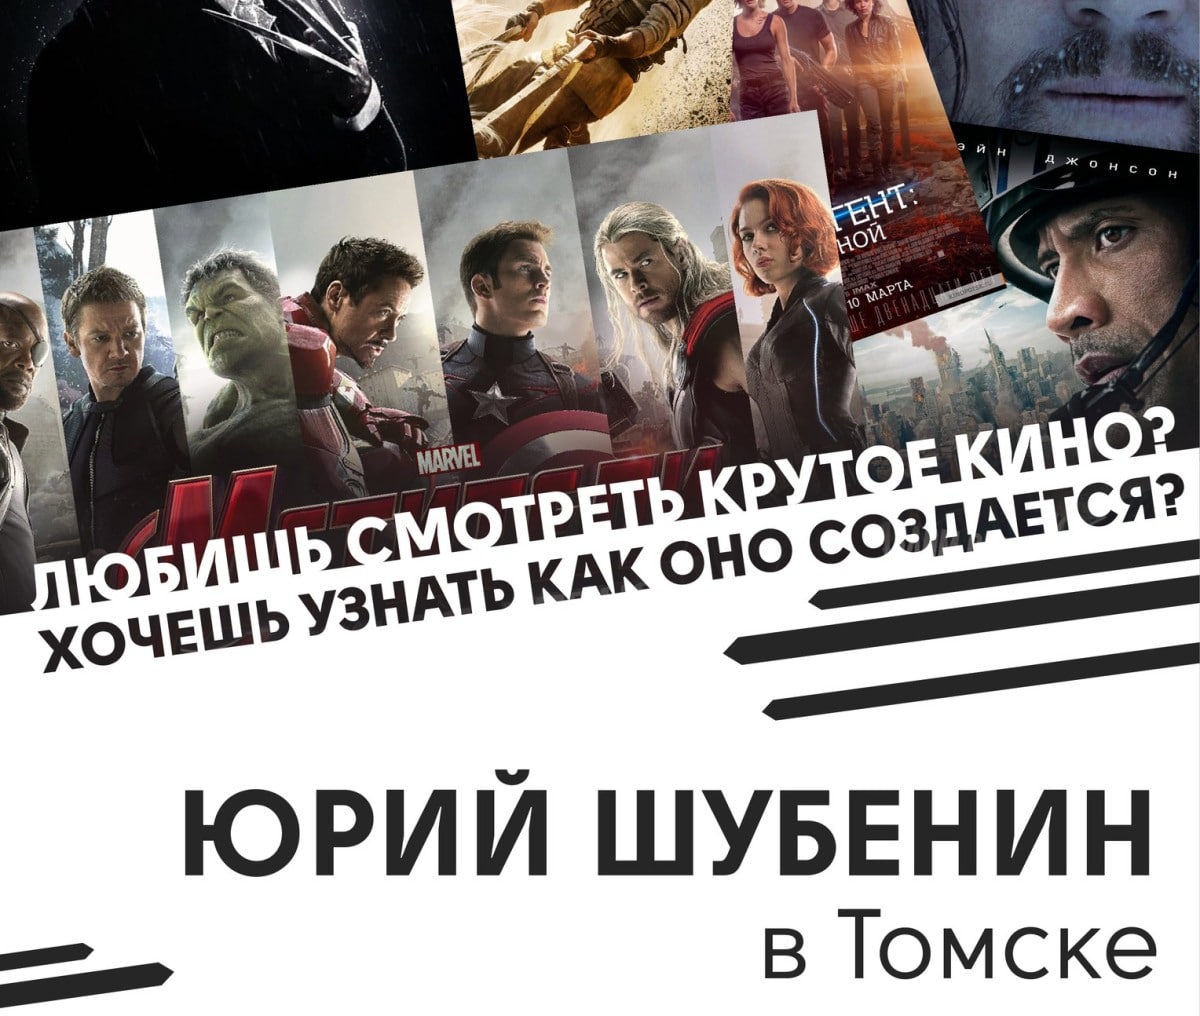 IT, Дизайн, Конкурсы и акции, Томские новости, компьютерная графика CG в Томске VFX графика и дизайн В Томске пройдет встреча с создателем визуальных эффектов в фильмах «Логан» и «Мстители»